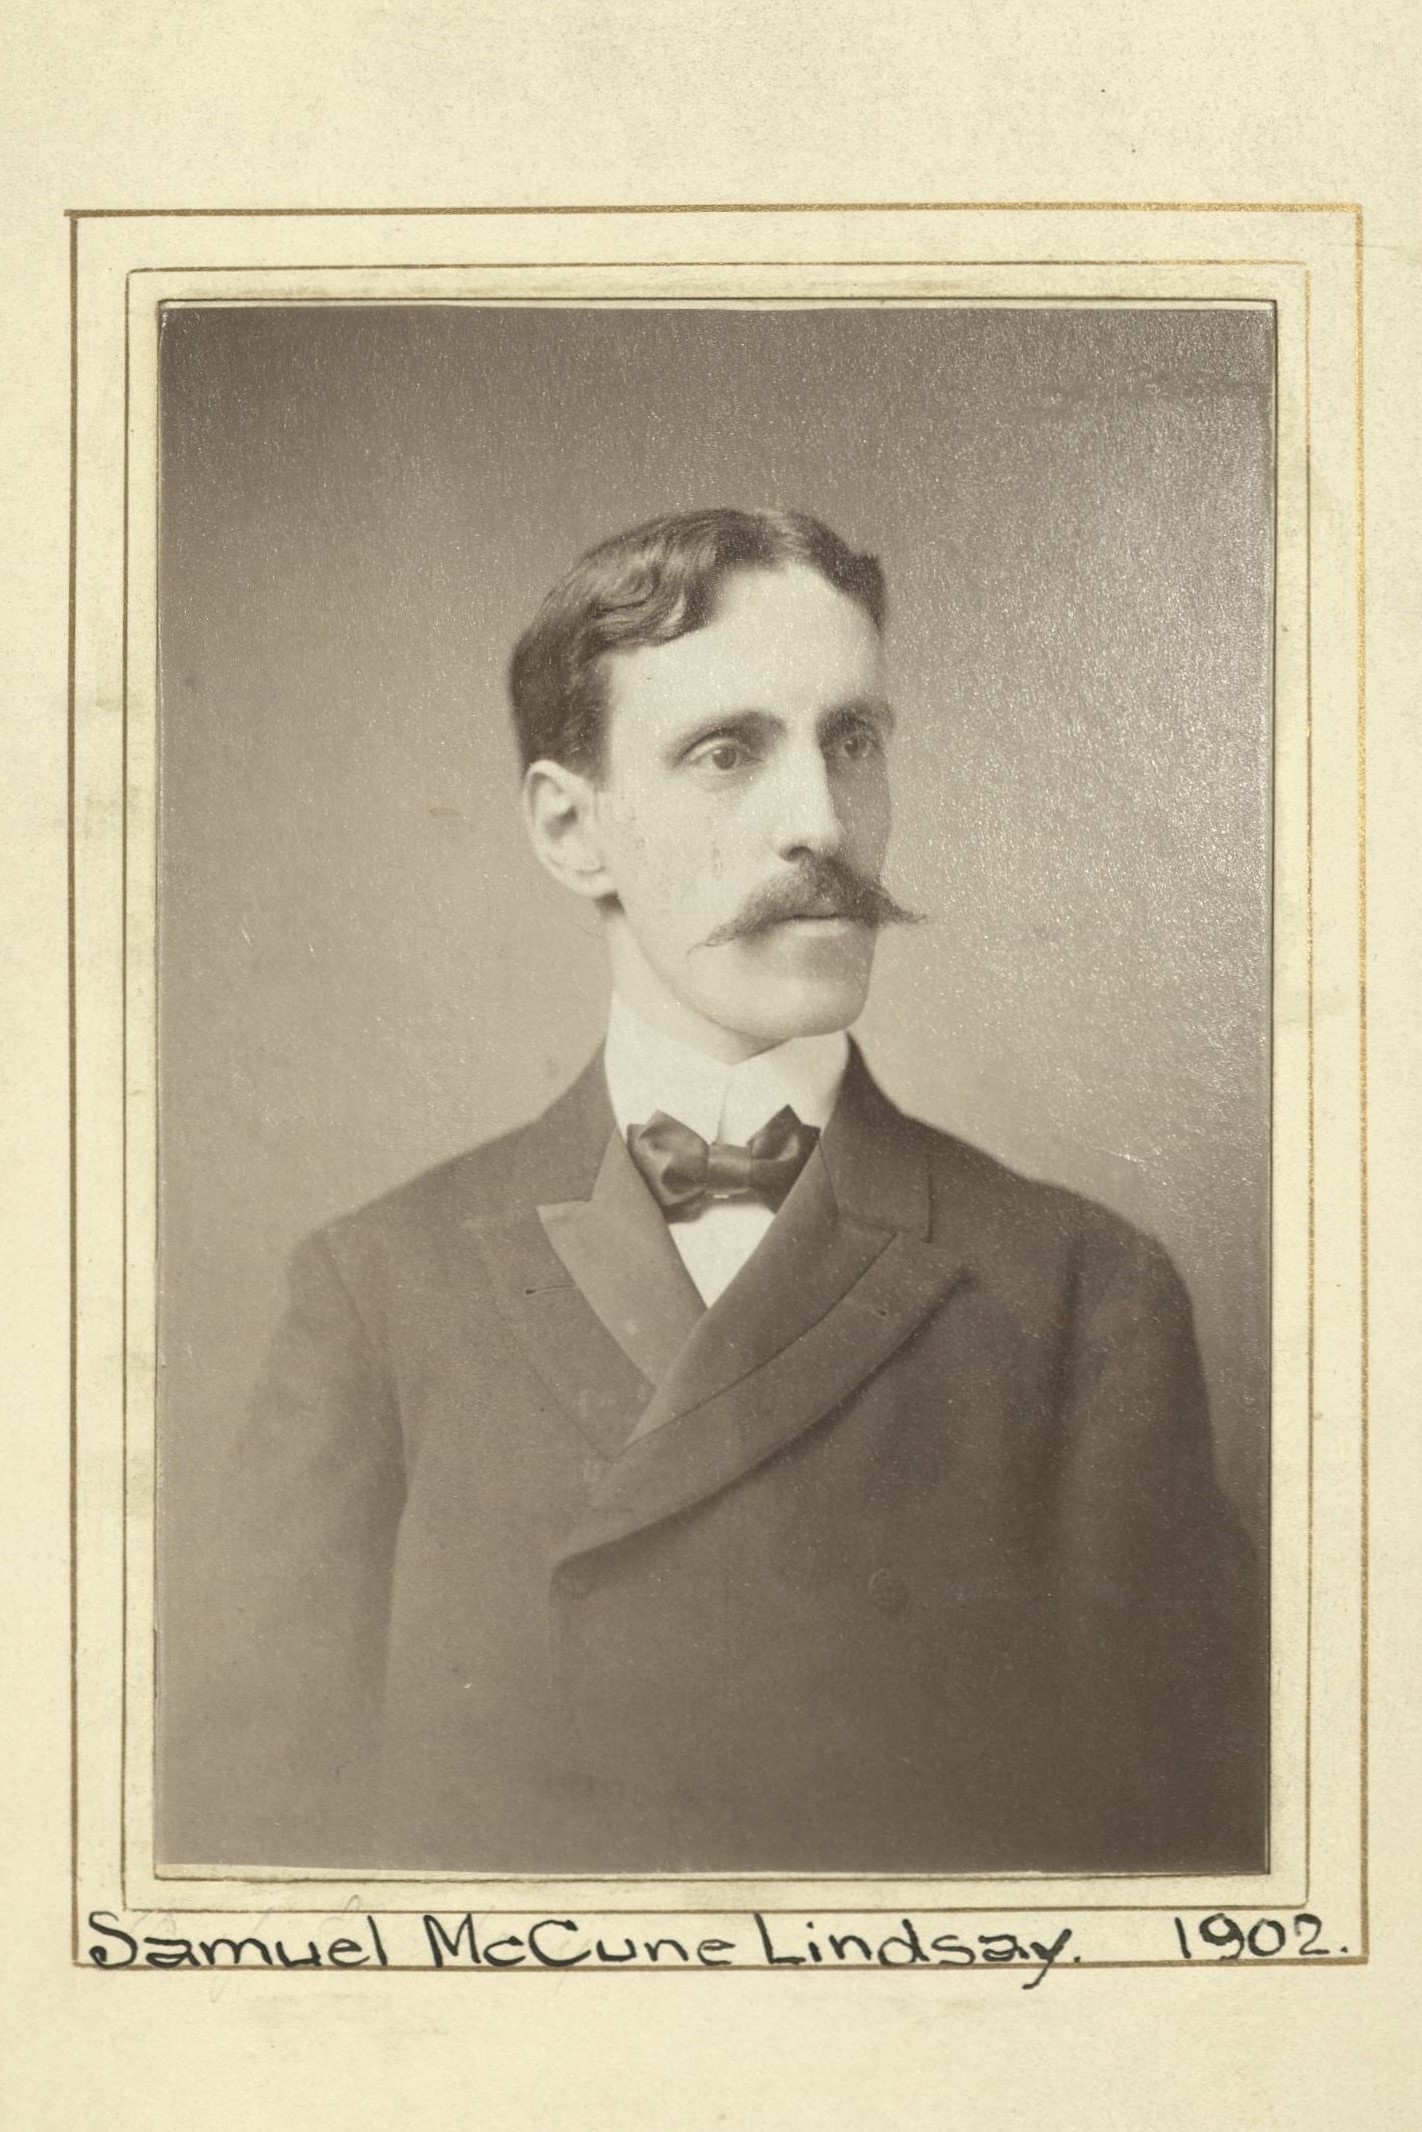 Member portrait of Samuel McCune Lindsay